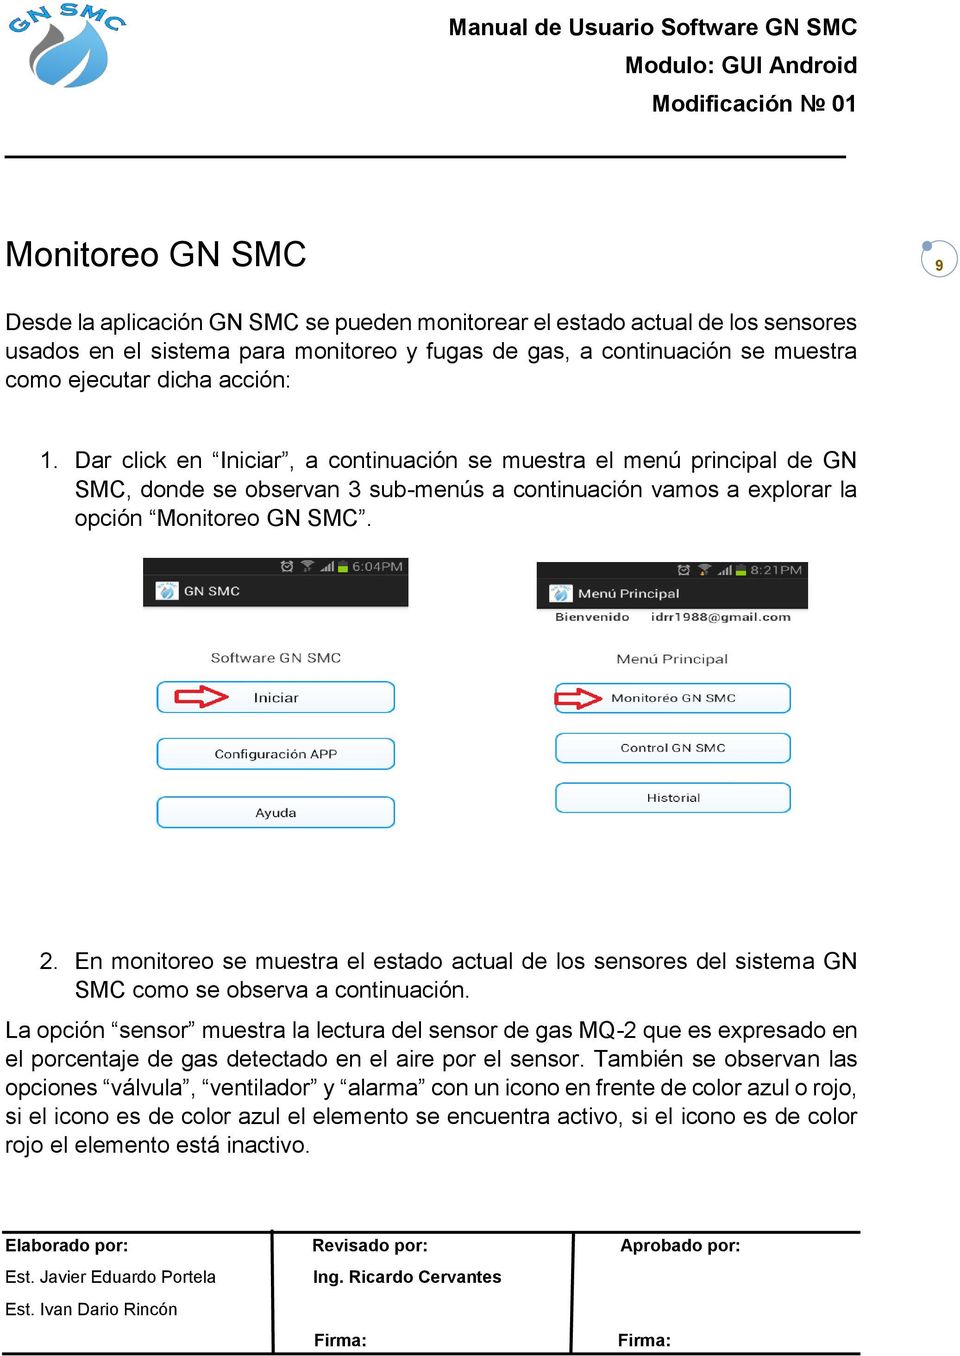 En monitoreo se muestra el estado actual de los sensores del sistema GN SMC como se observa a continuación.